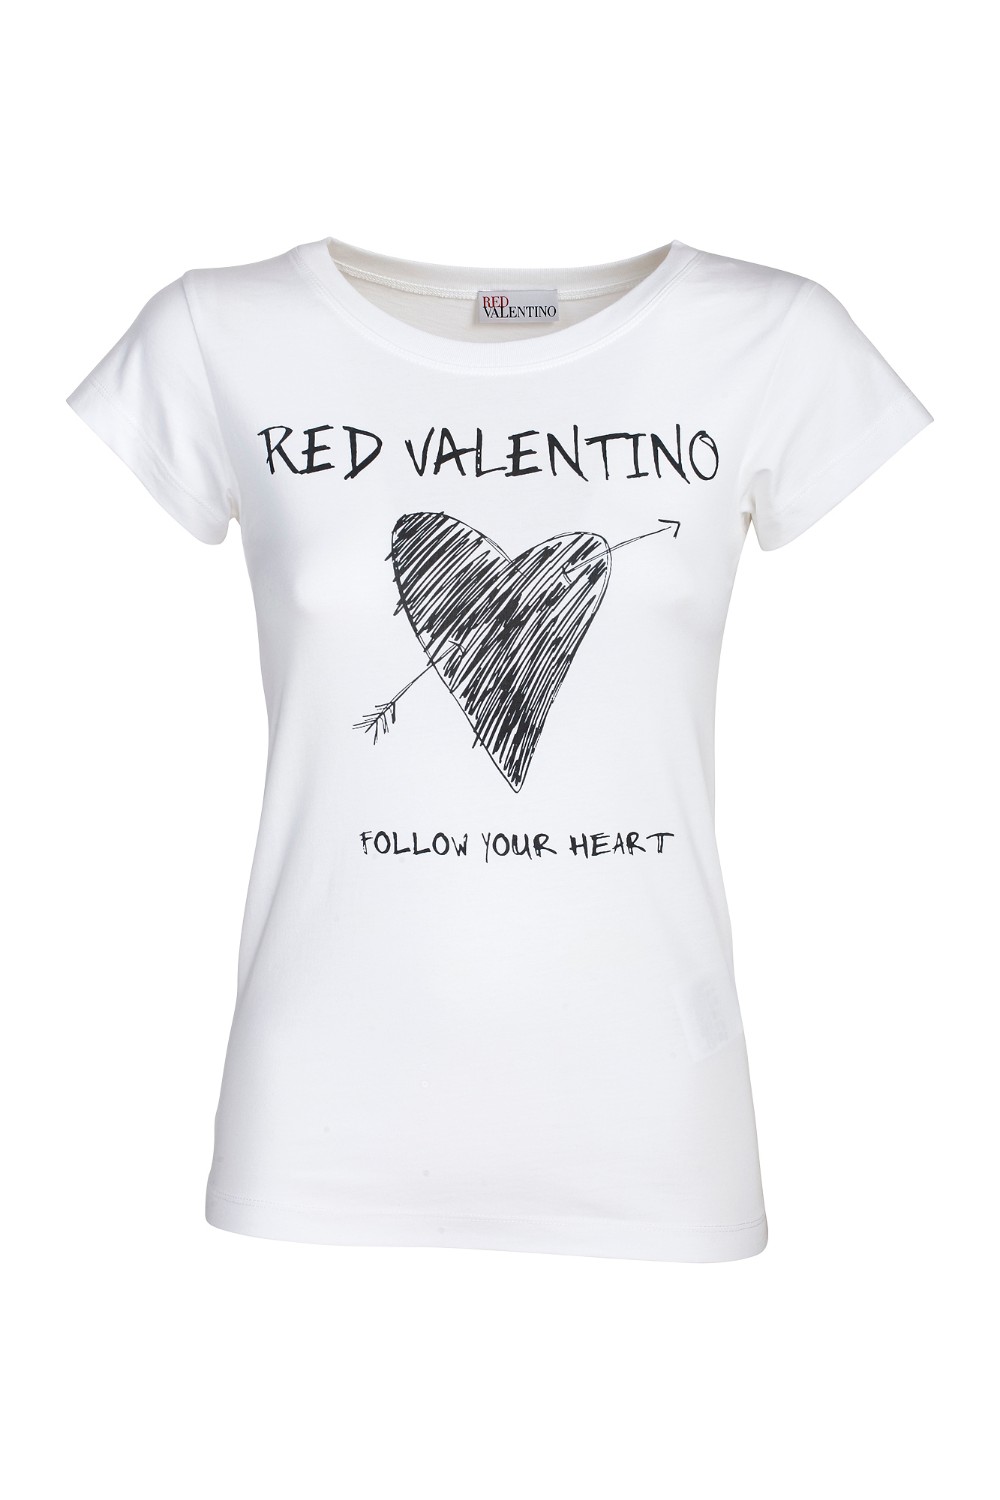 shop RED VALENTINO Saldi T-shirt: Red Valentino t-shirt in jersey di cotone con logo.
Girocollo.
Maniche corte.
Stampa.
Vestibilità aderente.
Composizione: 100% cotone.
Made in Turkey.. VR0MG10A5VK-0BO number 488143